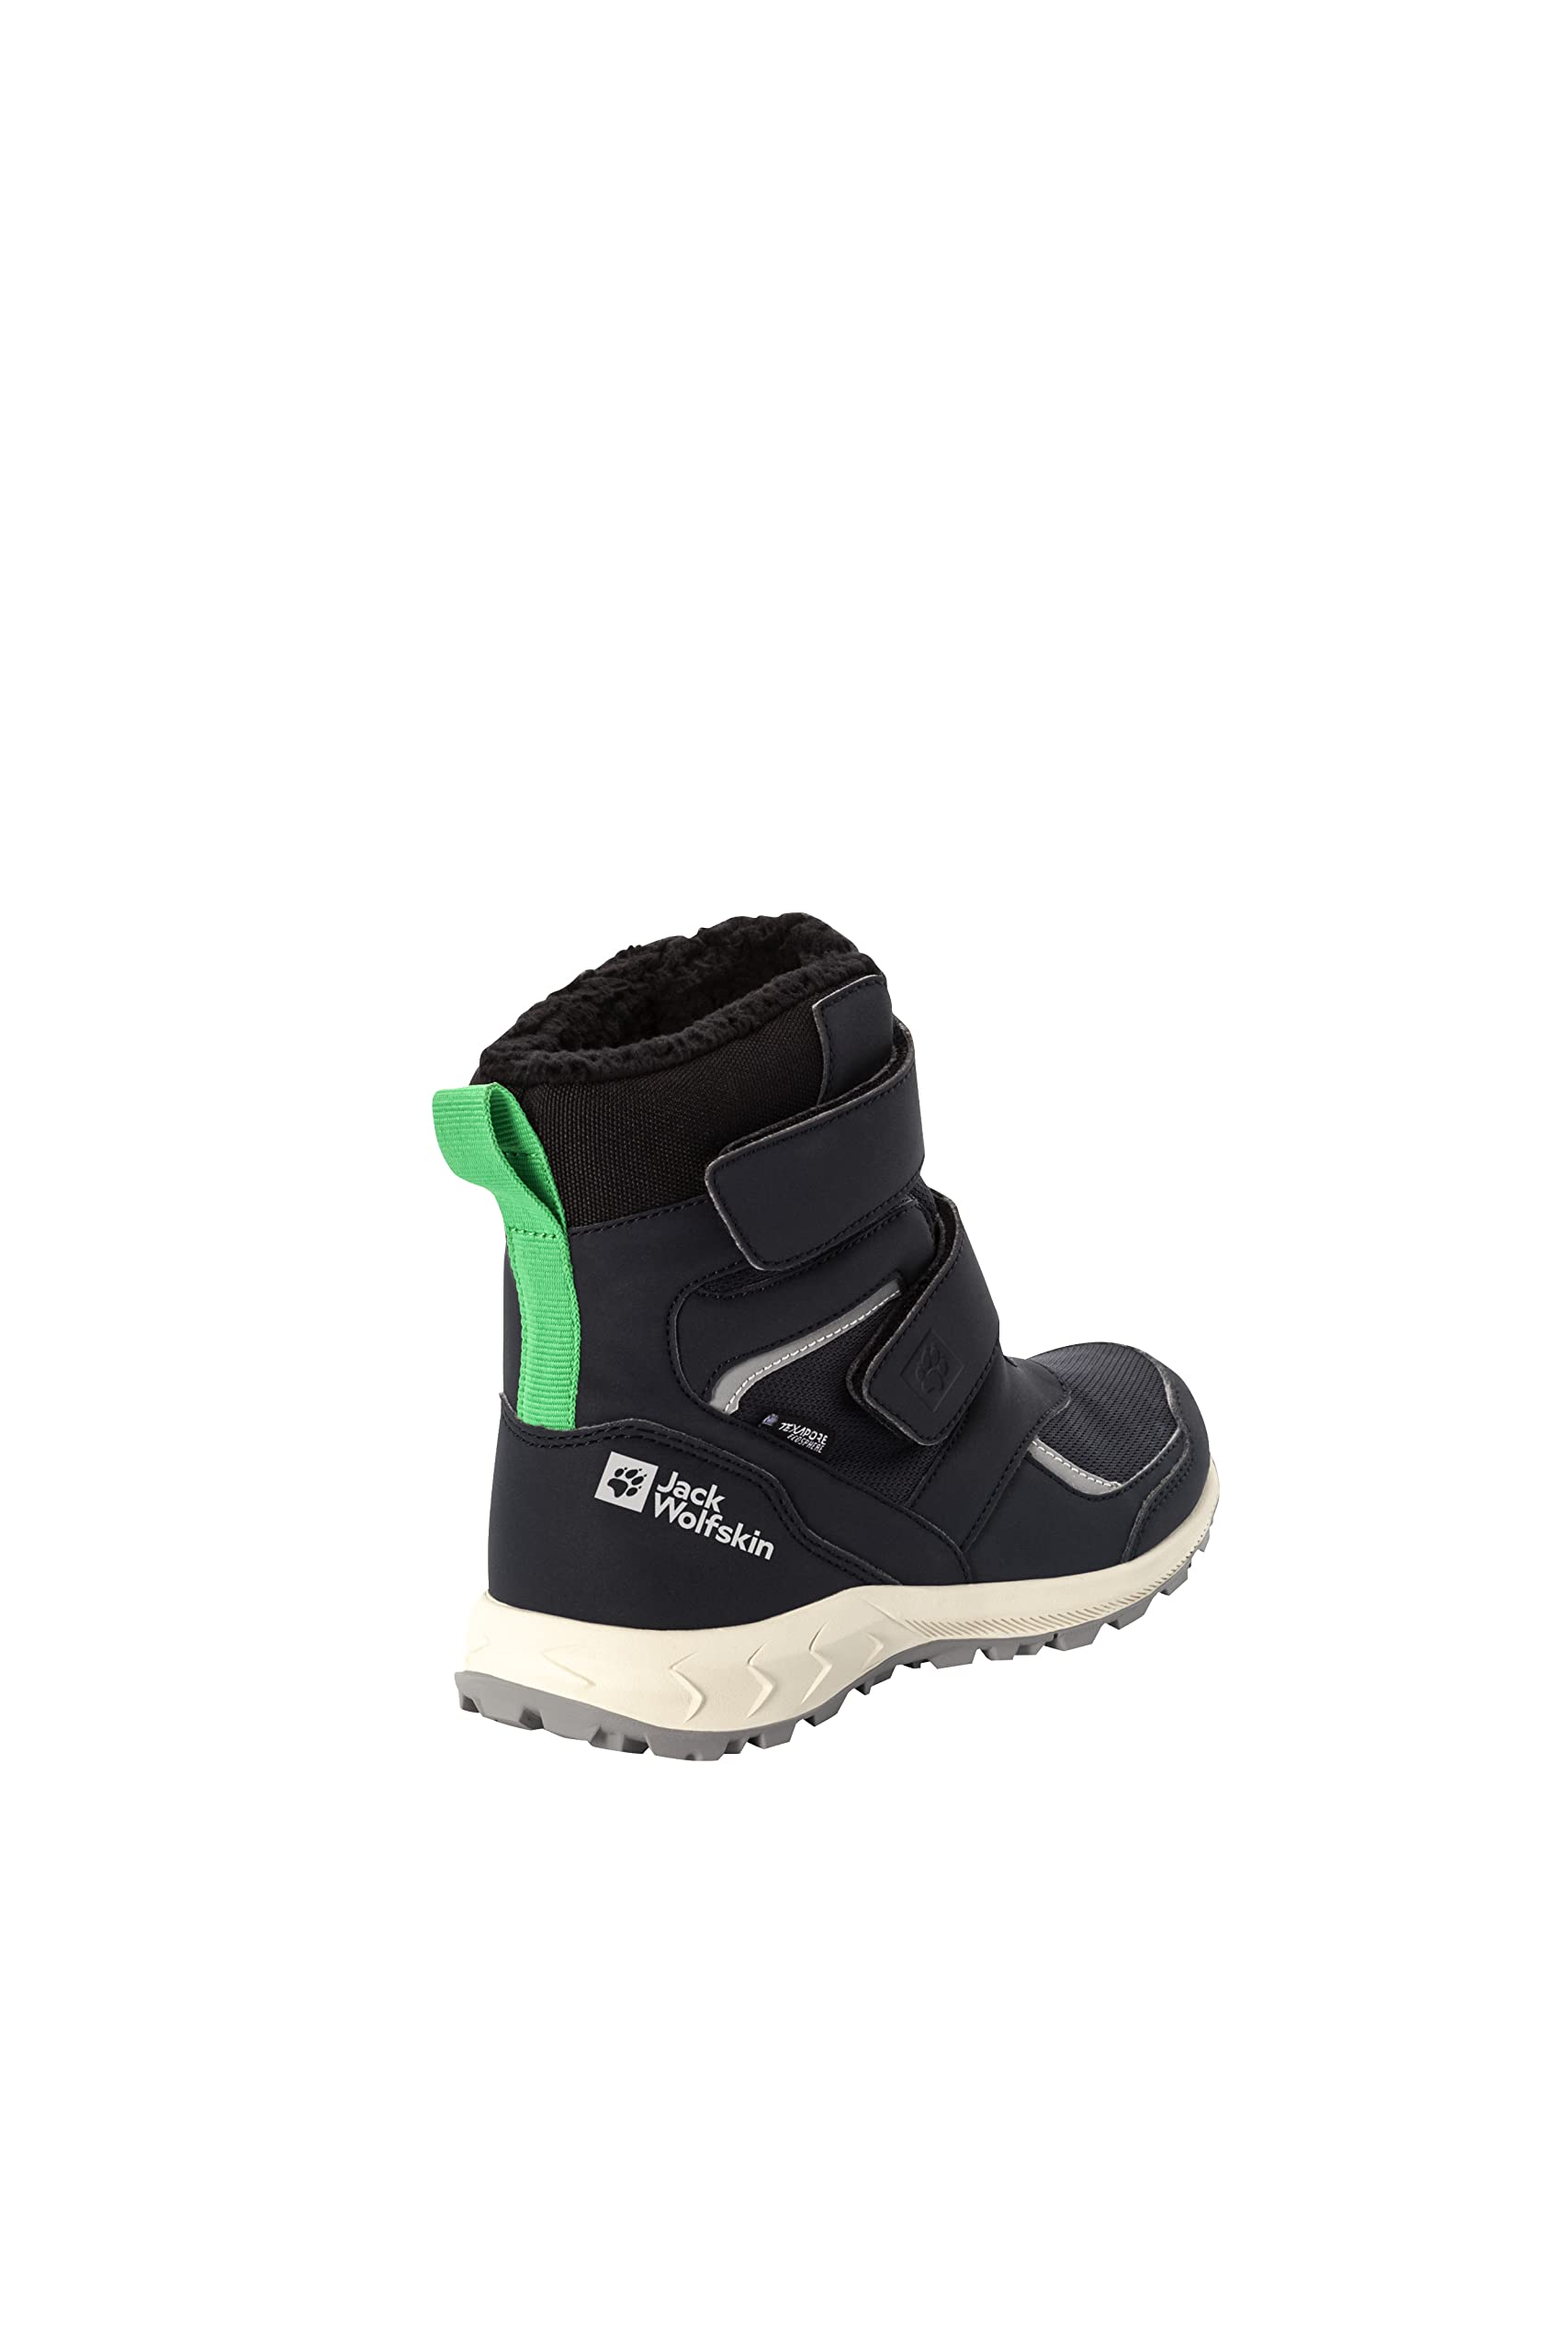 Jack Wolfskin Unisex-Child Woodland Wt Texapore High Hiking Shoe Backpacking Boot